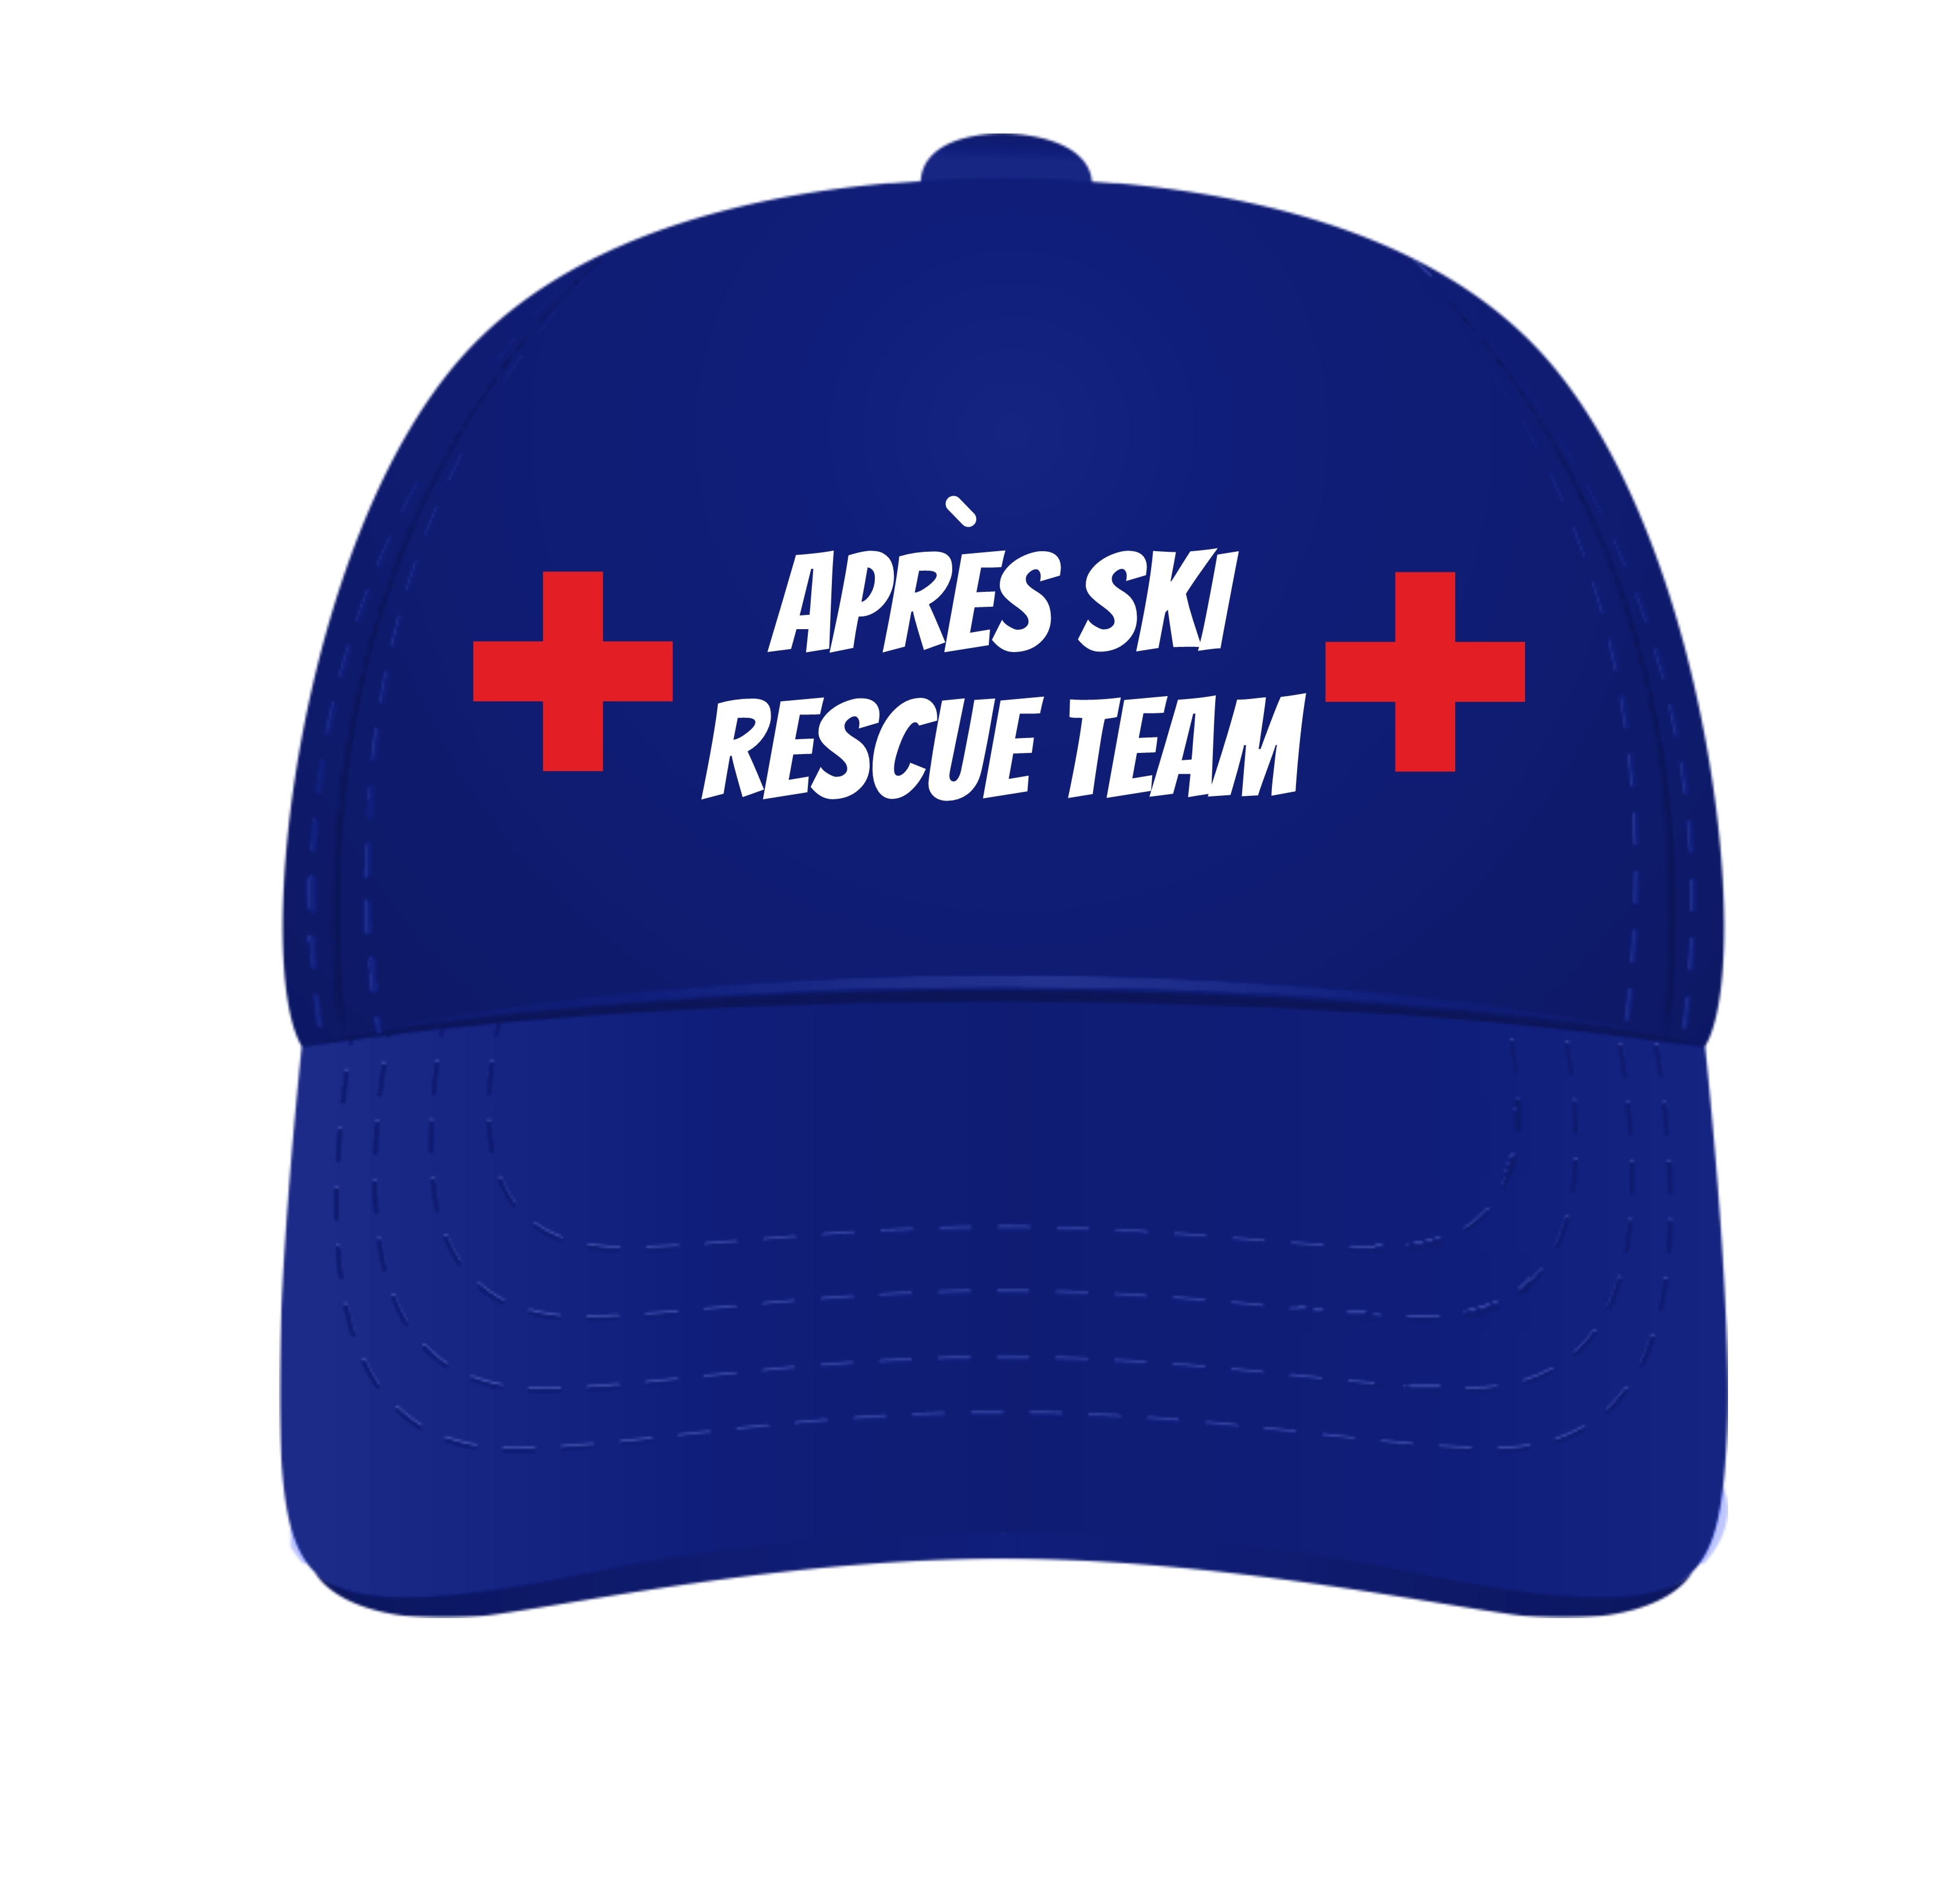 Pet voor het apres ski rescue team in diverse kleuren verkrijgbaar  leuk voor apres ski party